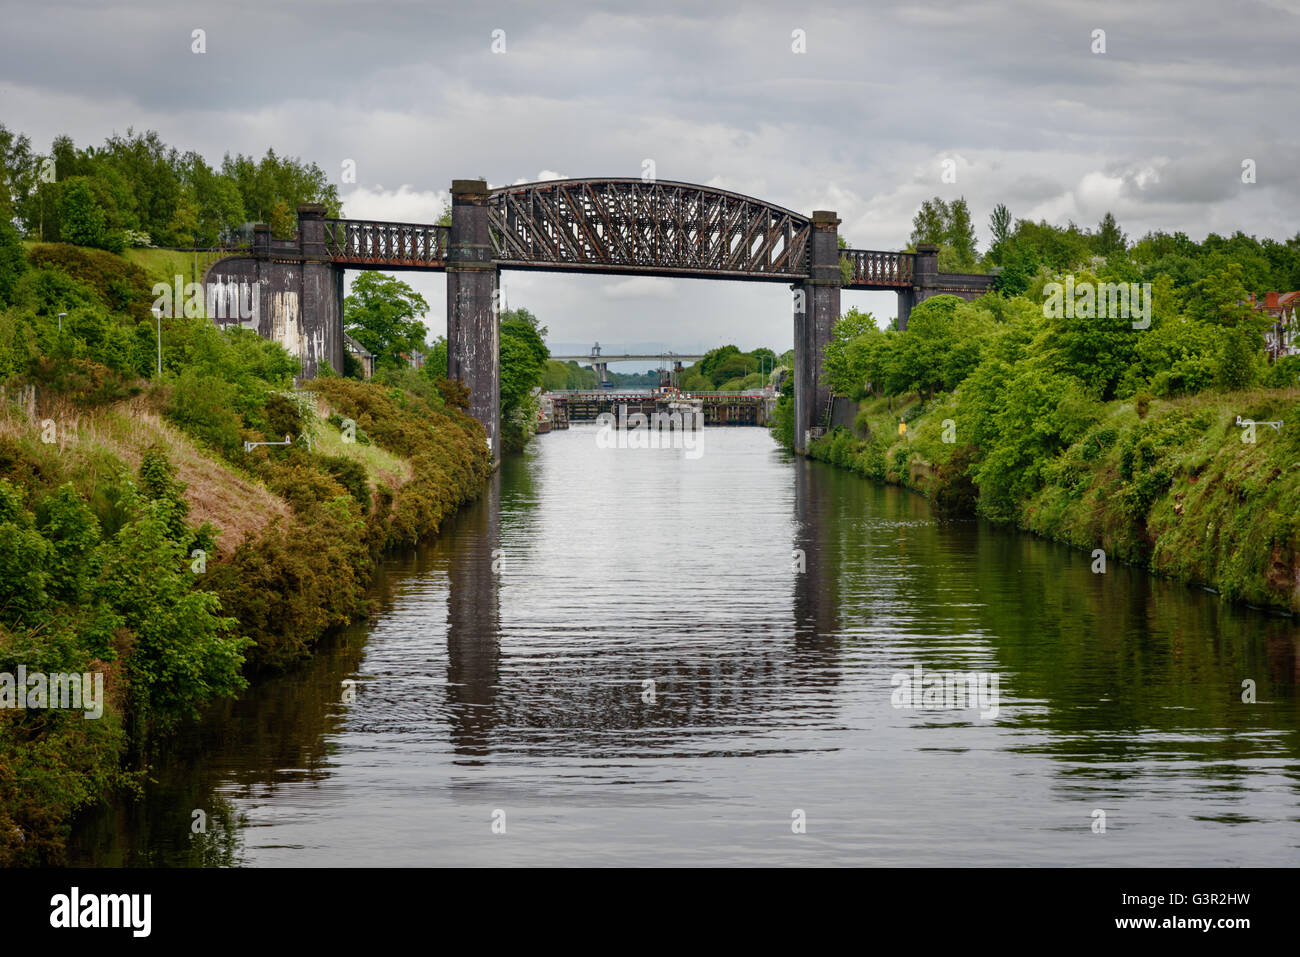 El Viaducto Thelwall es una viga compuesta de acero del viaducto en Lymm, Warrington, Inglaterra. Foto de stock